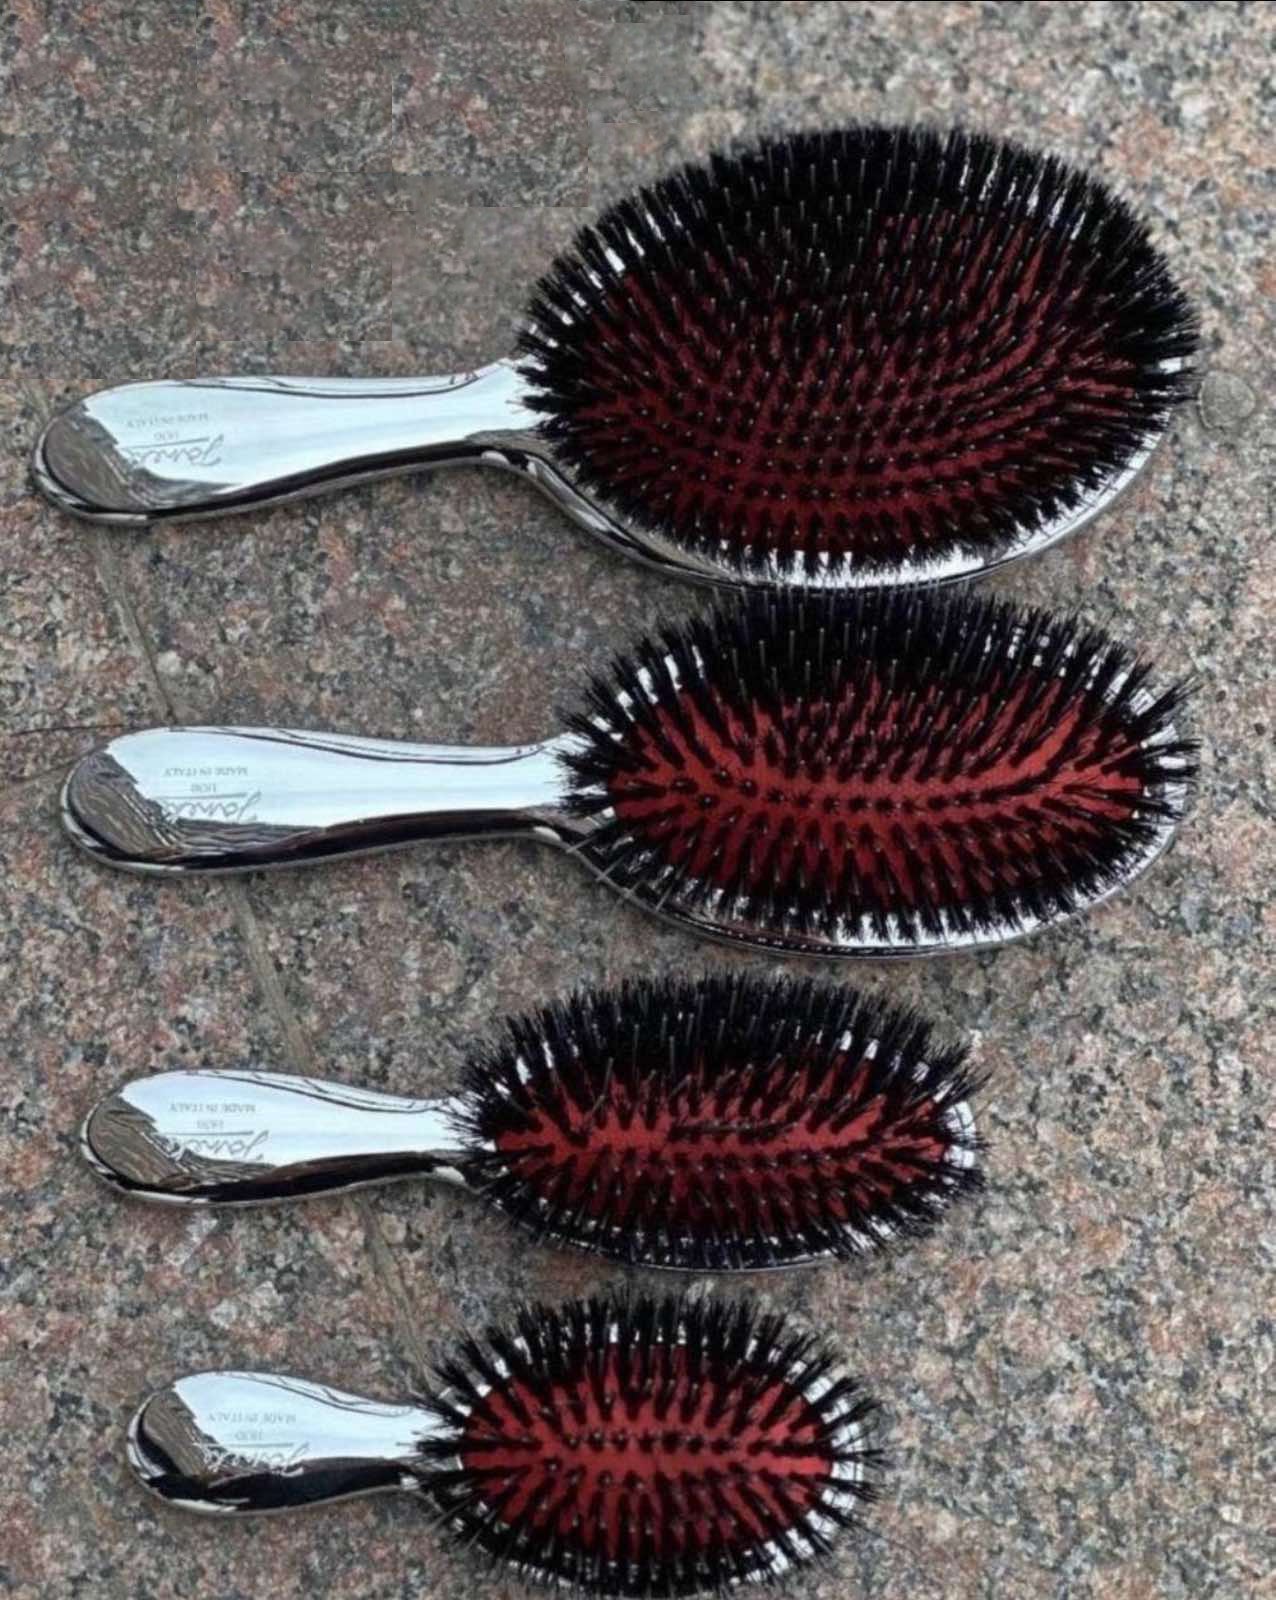 Щітка для волосся з натуральною щетиною - Janeke Silver Hairbrush S